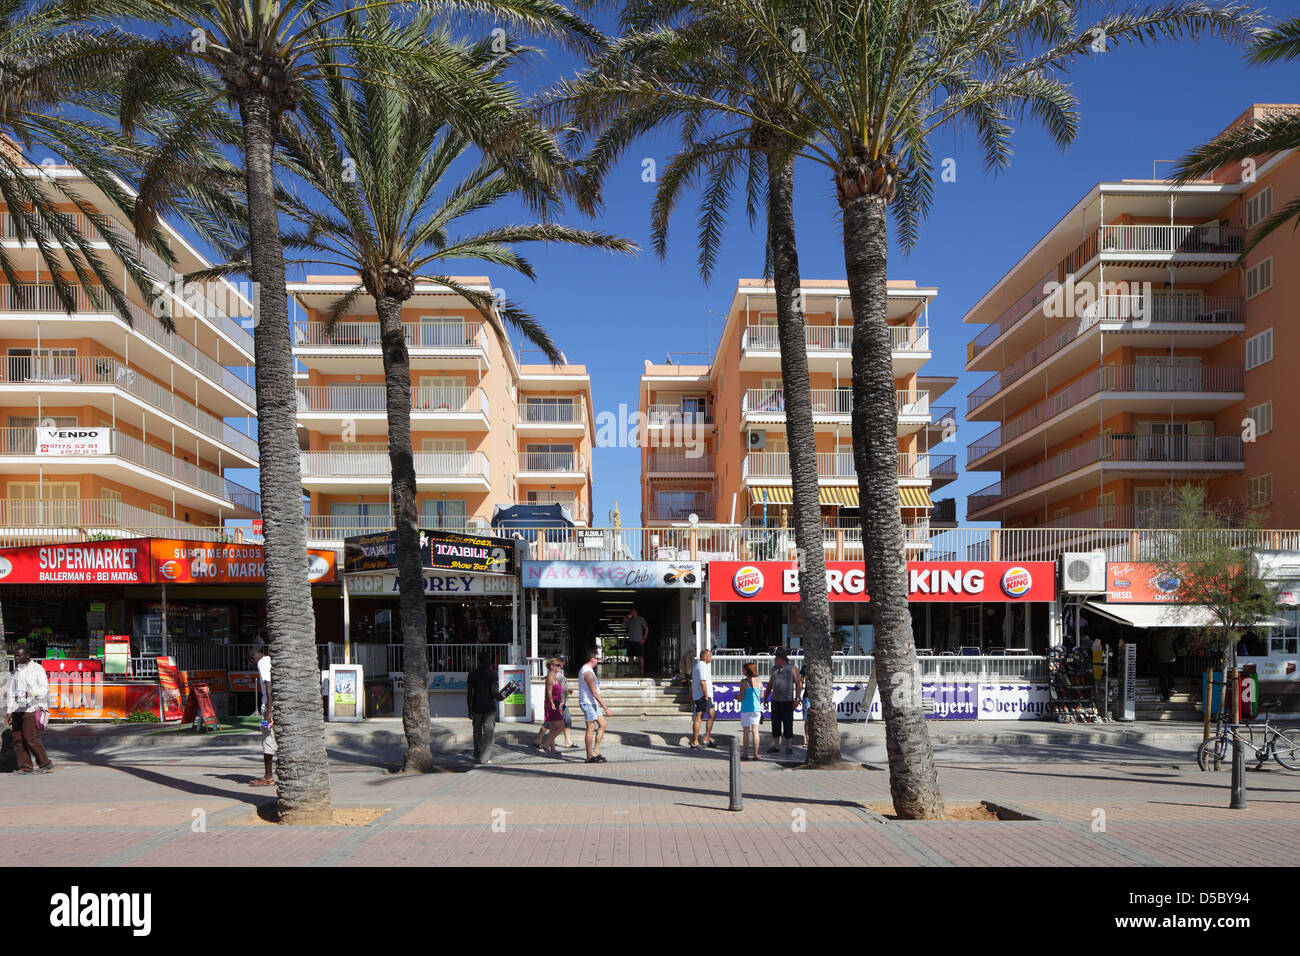 El Arenal, Spain, hotel buildings at Playa de Palma, El Arenal Stock Photo